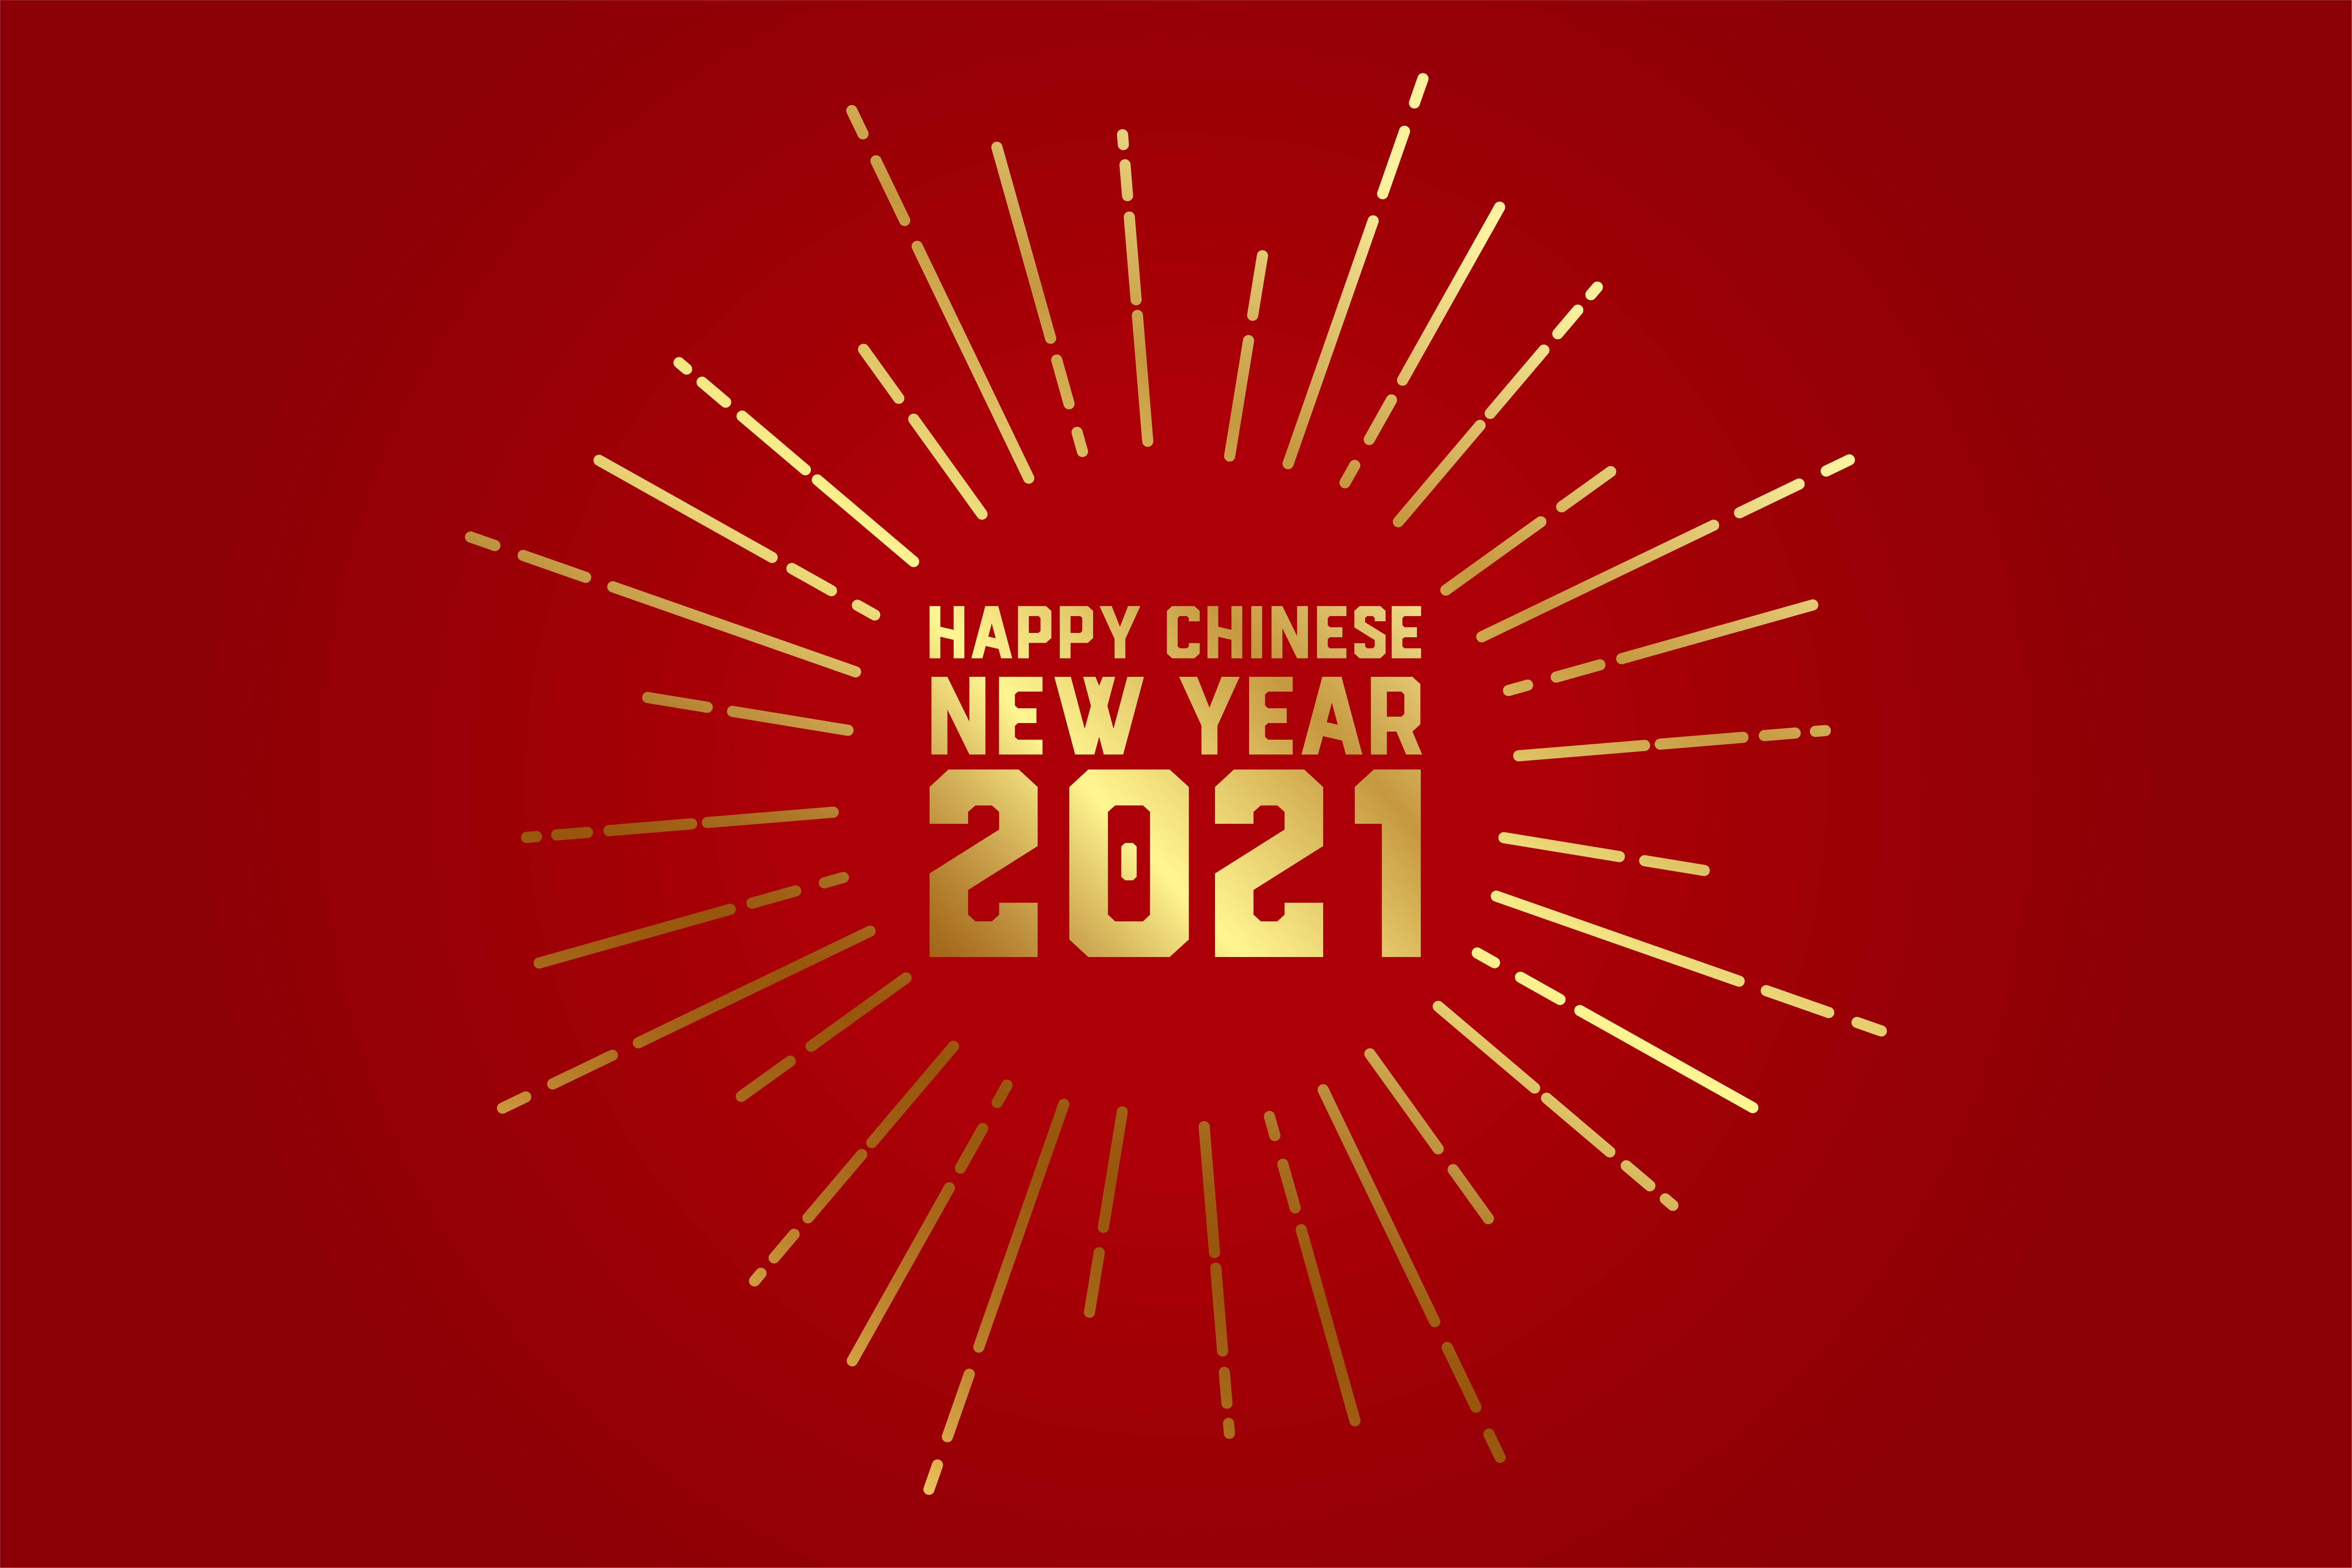 农历新年快乐2021年贺卡矢量图happy-chinese-new-year-2021-greeting-card-vector